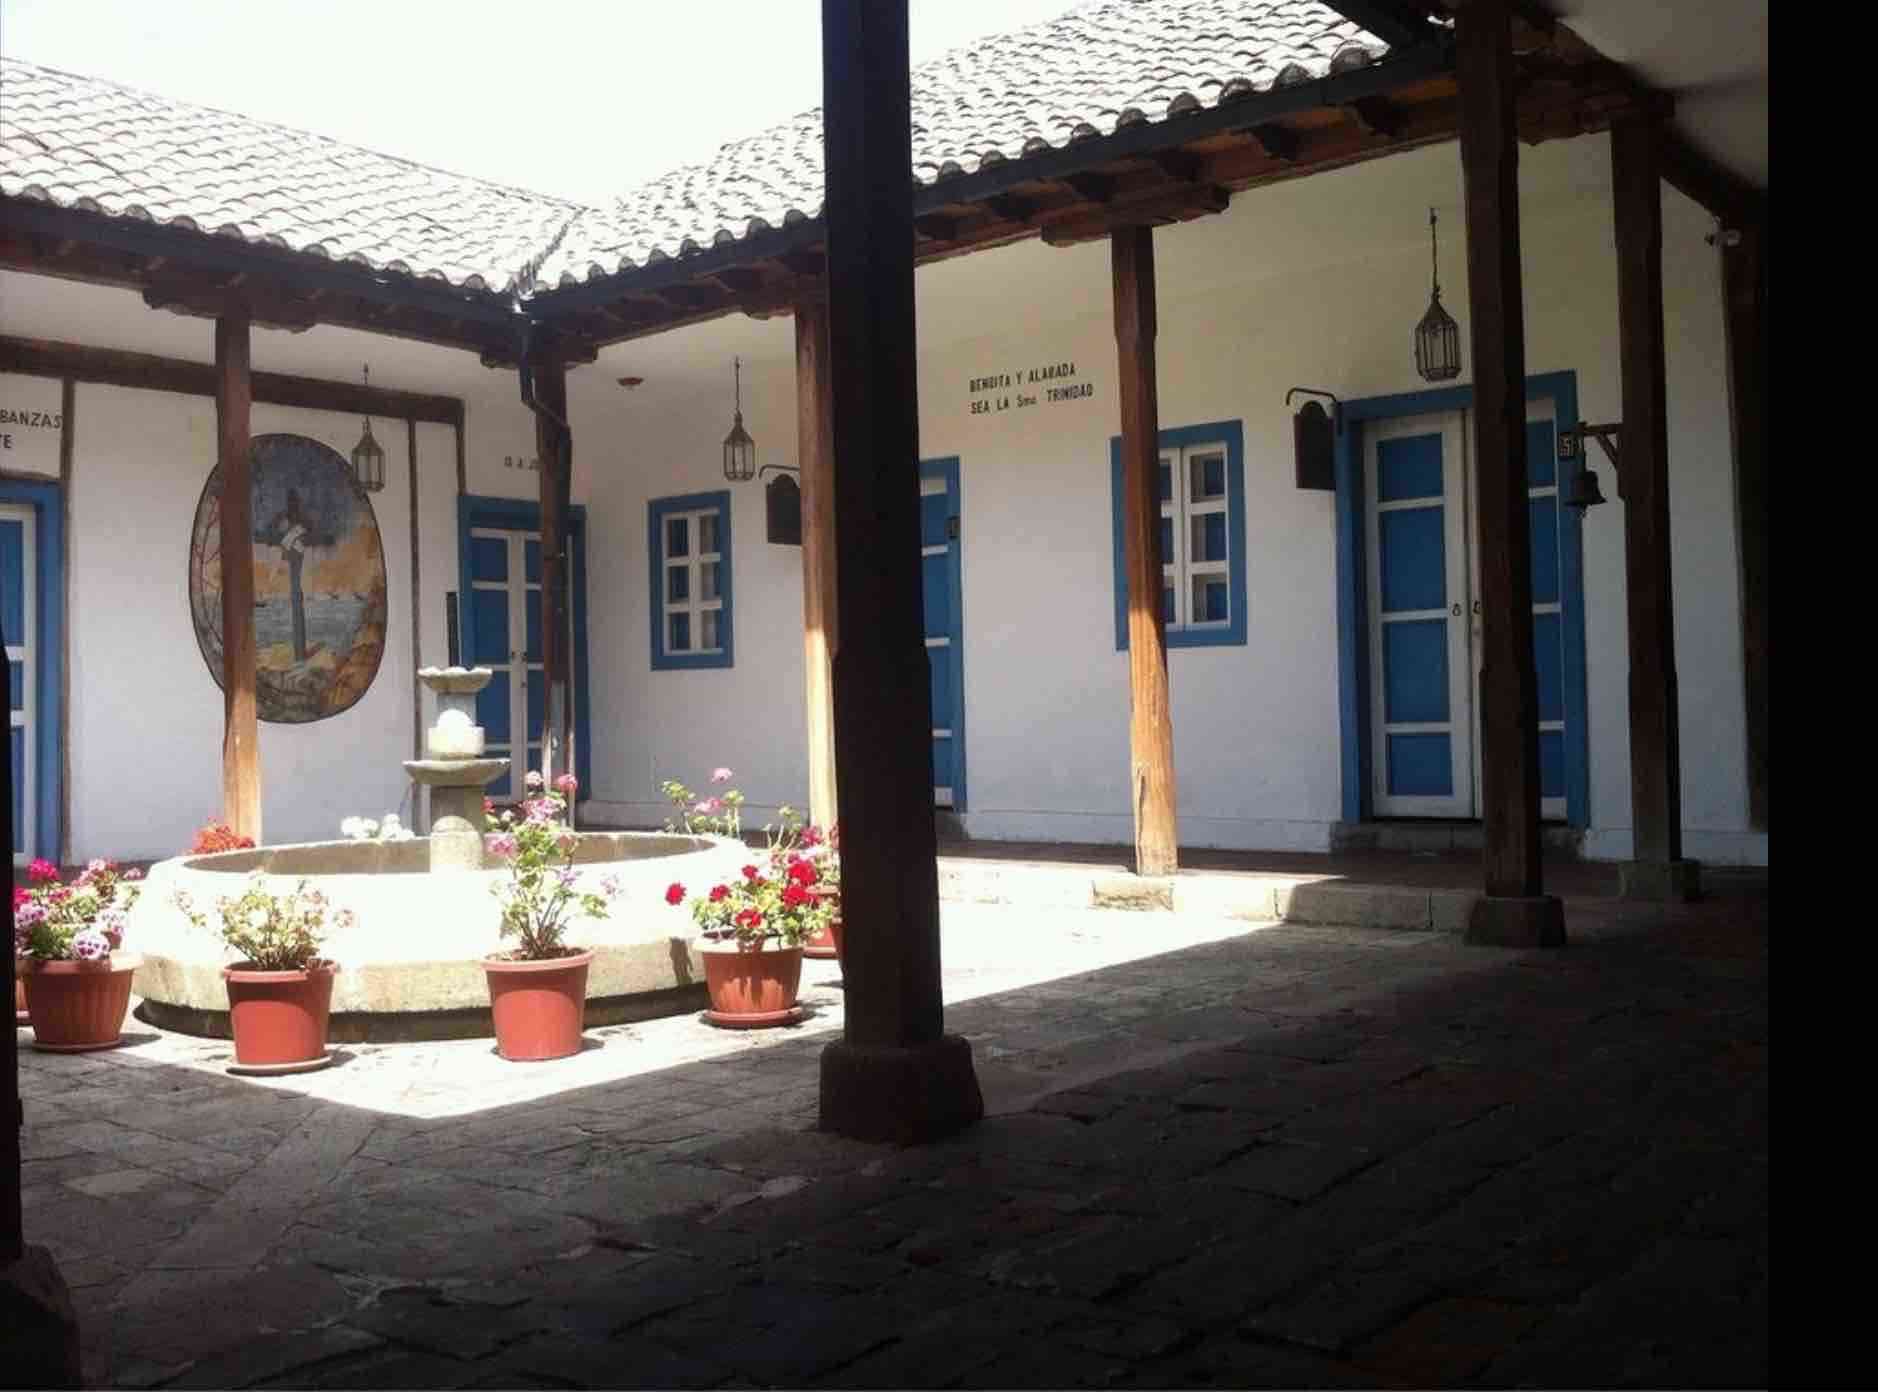 Chimborazo desde Riobamba